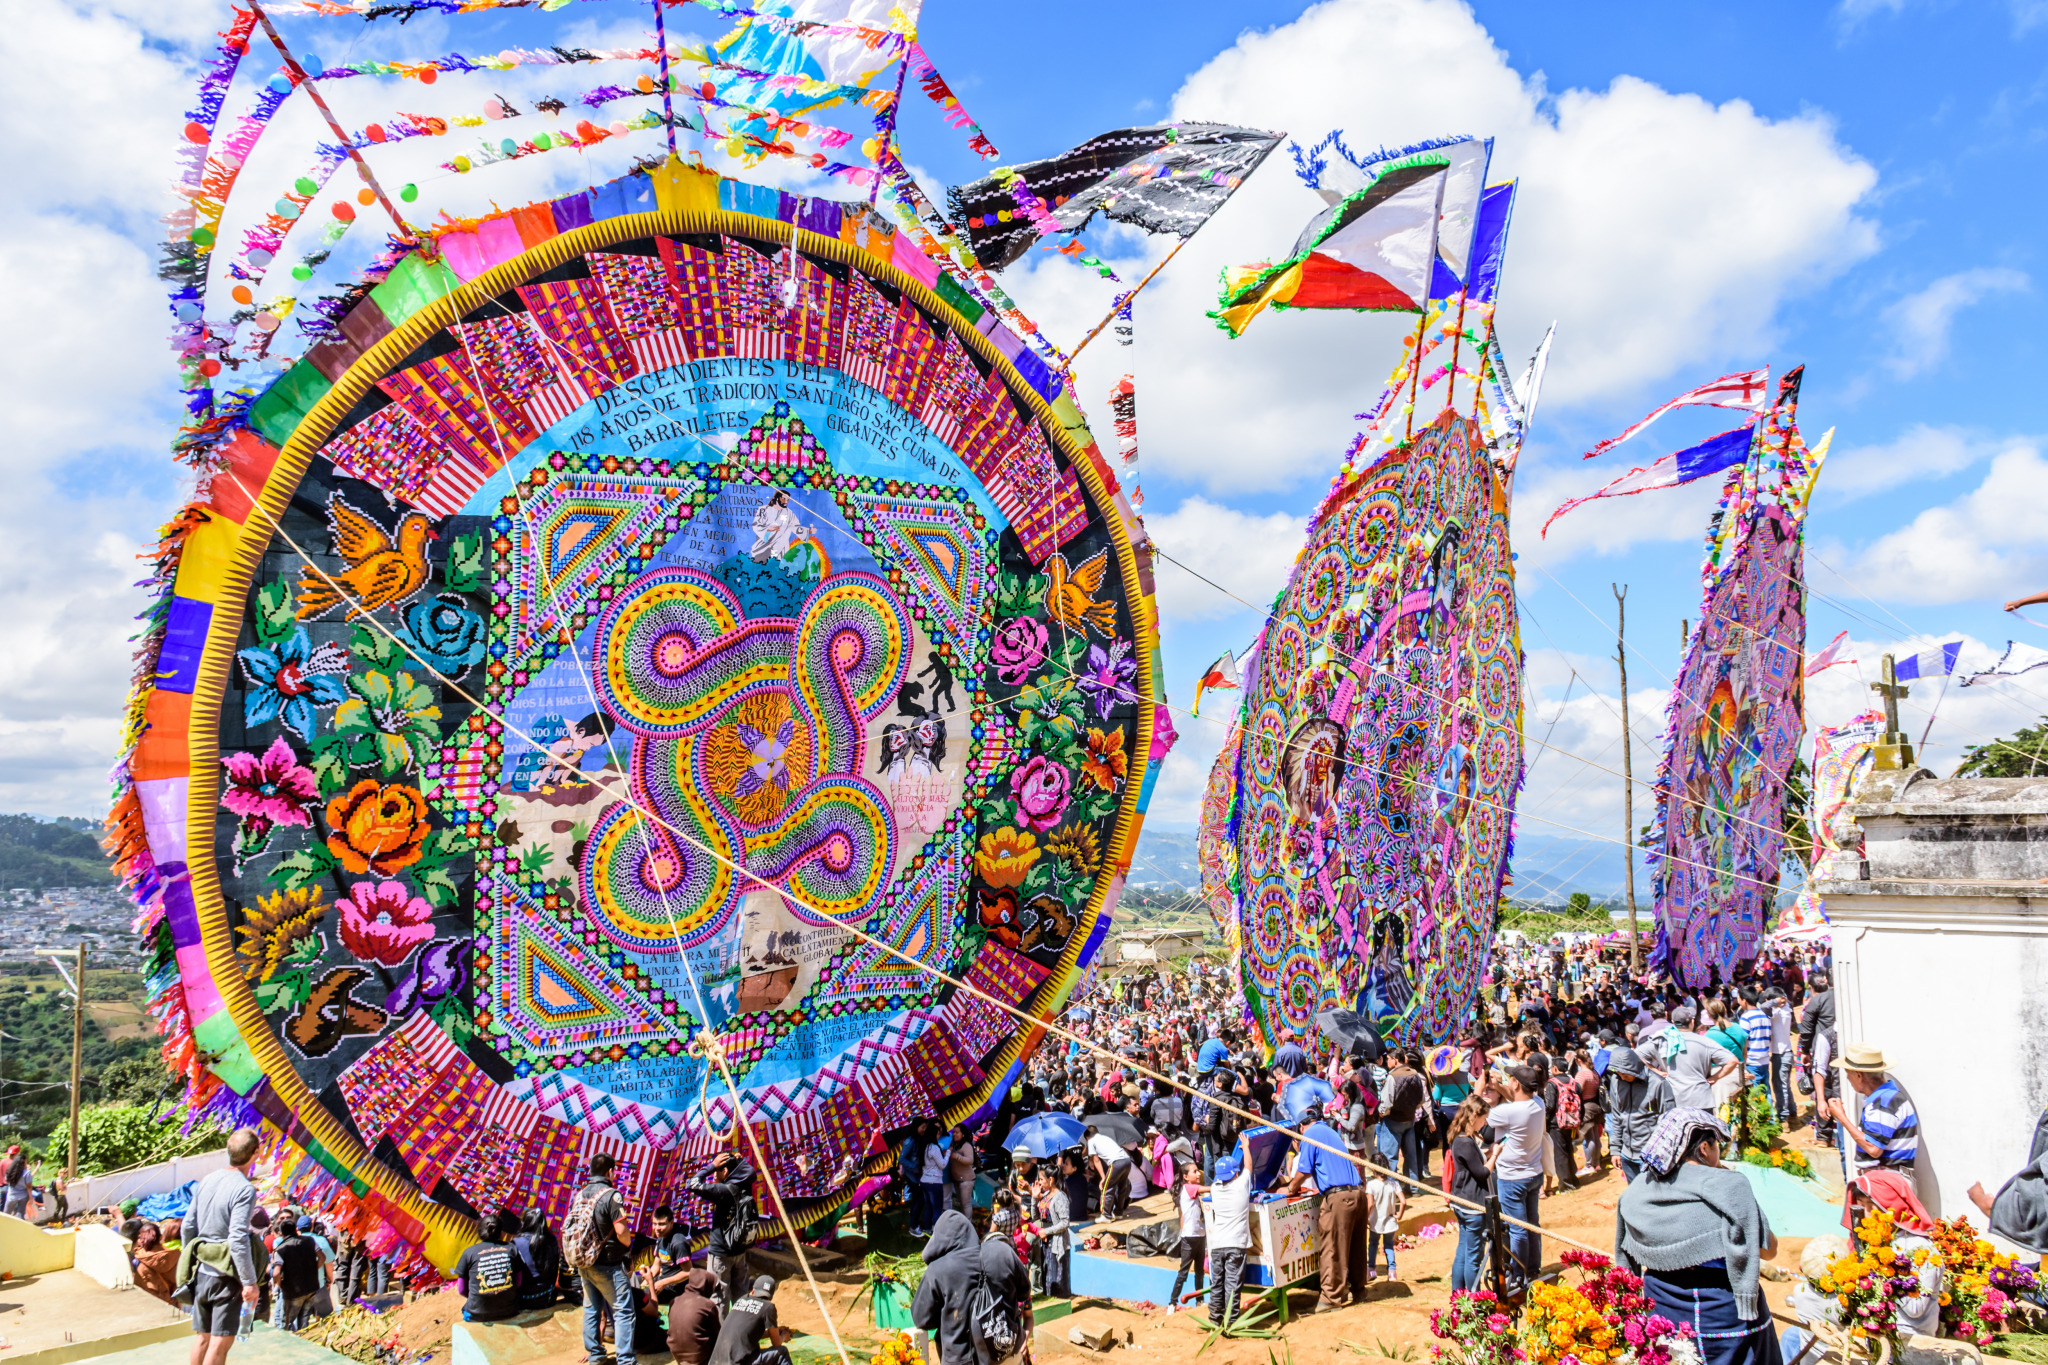 Giant kite festival in Guatemala